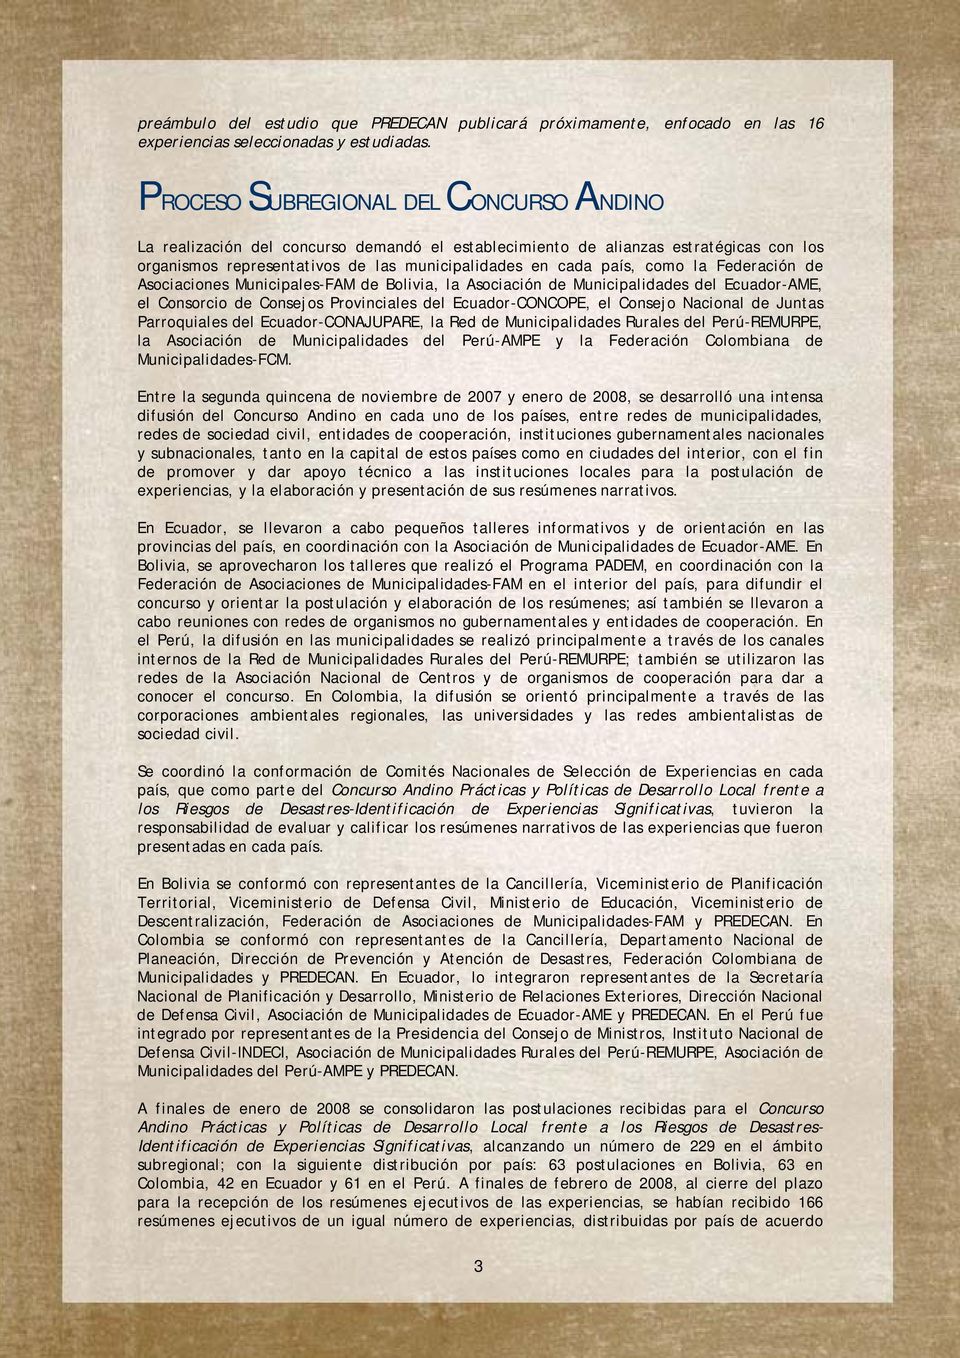 Federación de Asociaciones Municipales-FAM de Bolivia, la Asociación de Municipalidades del Ecuador-AME, el Consorcio de Consejos Provinciales del Ecuador-CONCOPE, el Consejo Nacional de Juntas